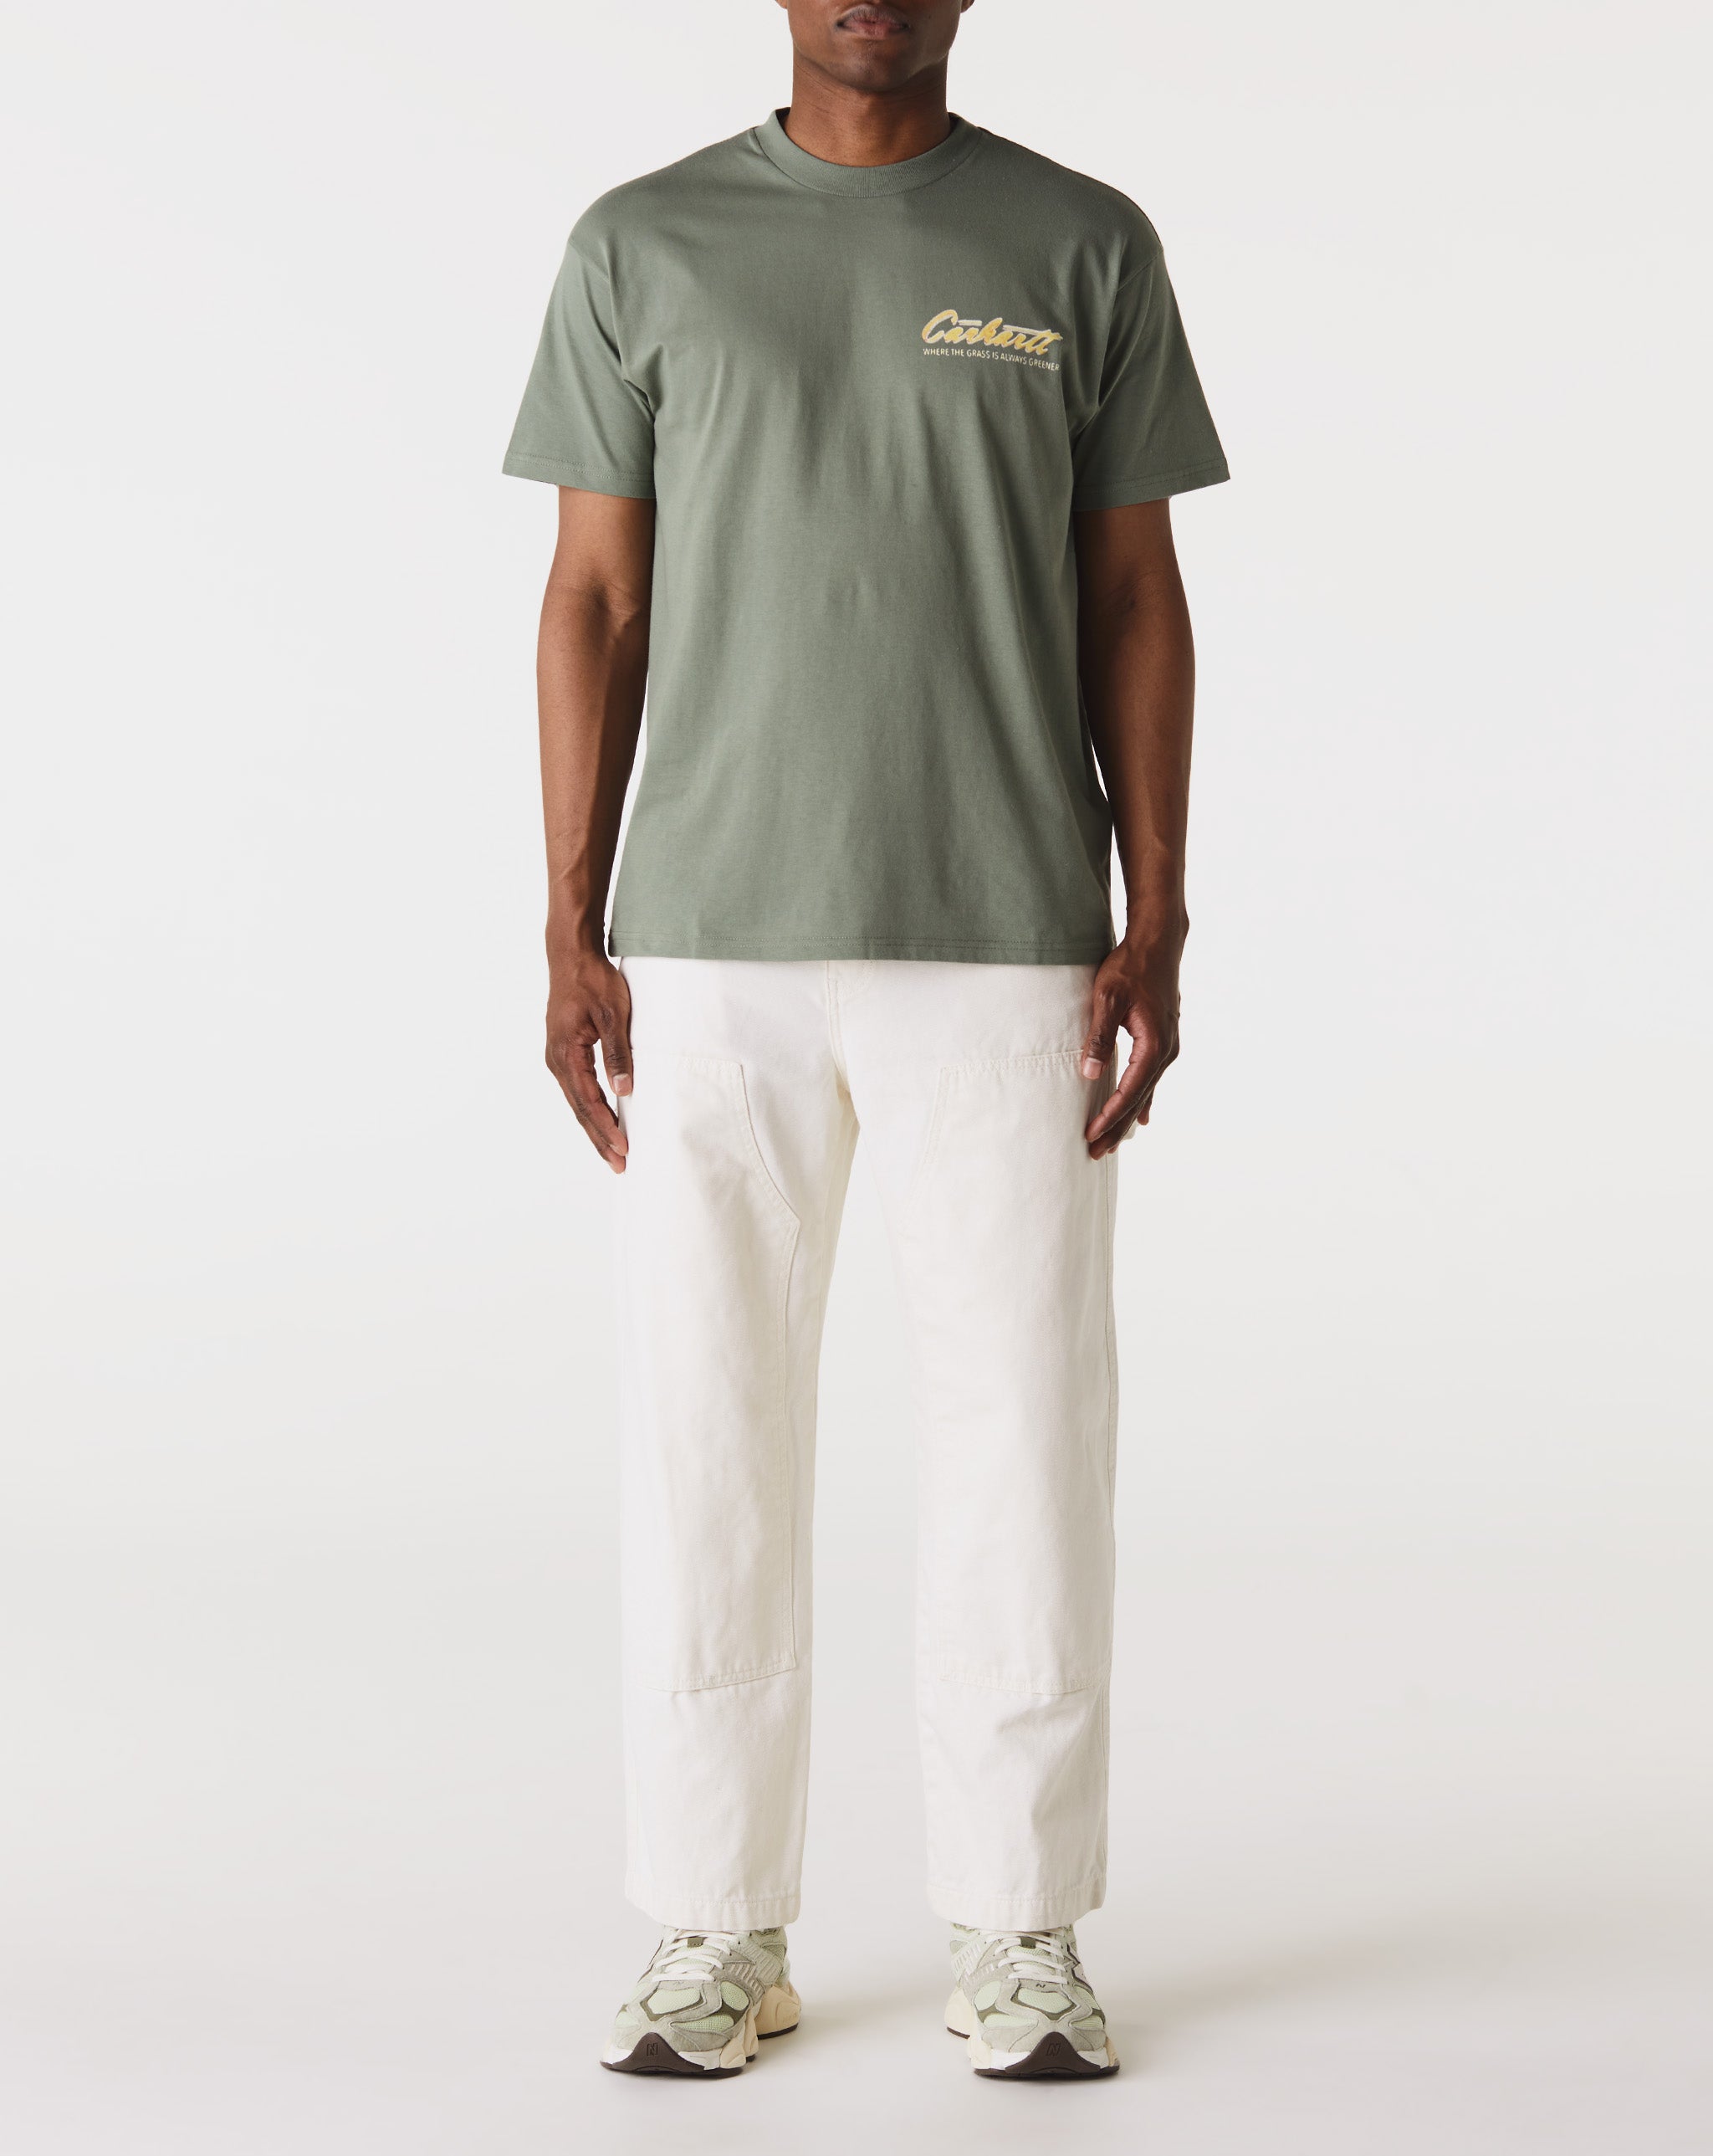 Carhartt WIP Green Grass T-Shirt  - XHIBITION